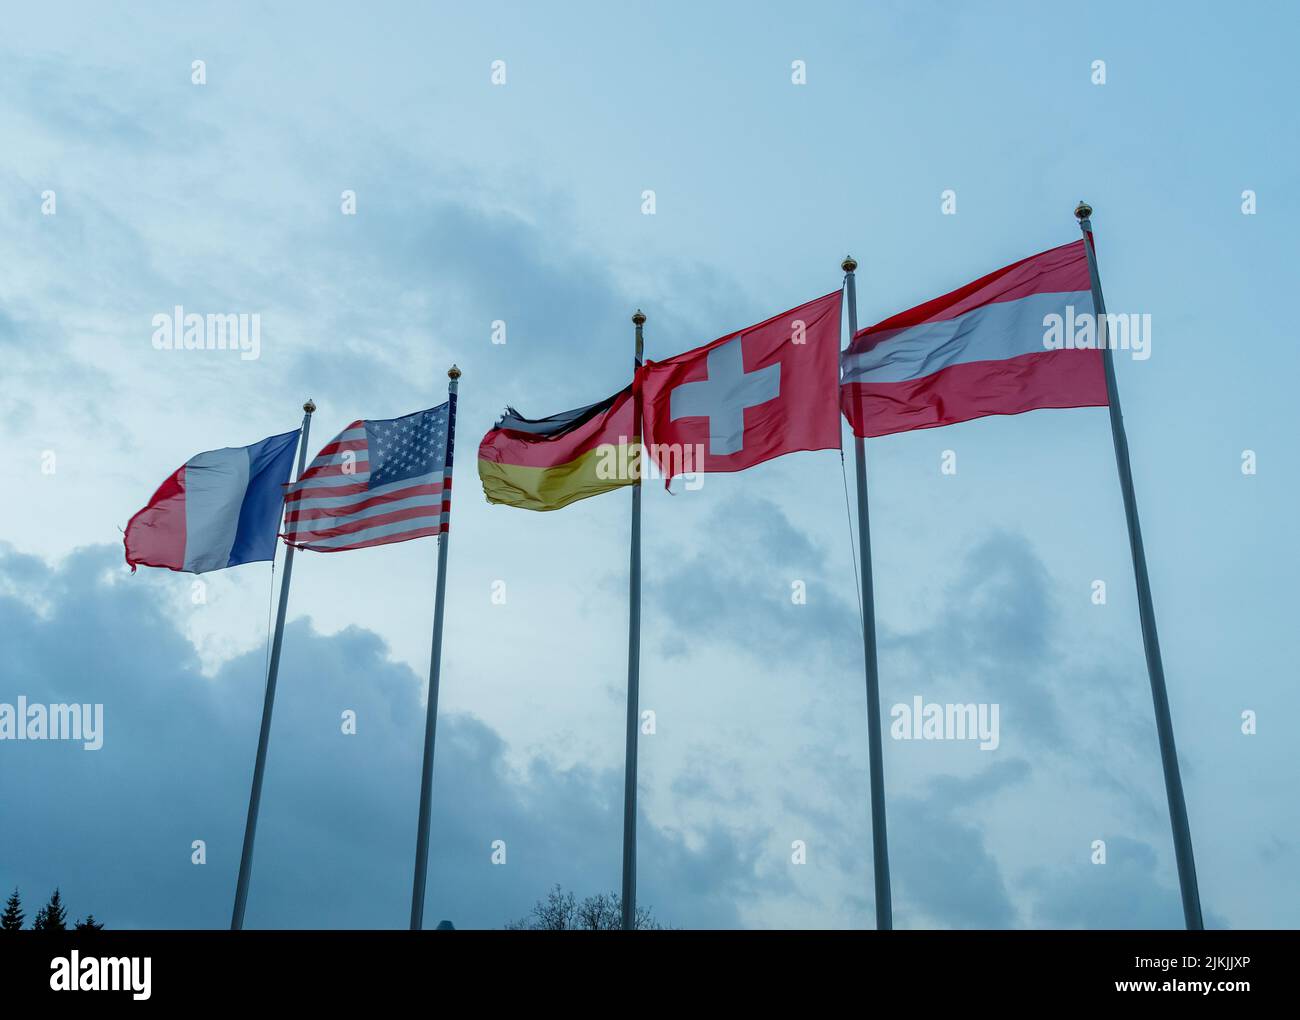 Un colpo d'angolo basso delle bandiere di Francia, USA, Germania, Svizzera e Austria che sbattono su pali metallici contro cielo nuvoloso Foto Stock